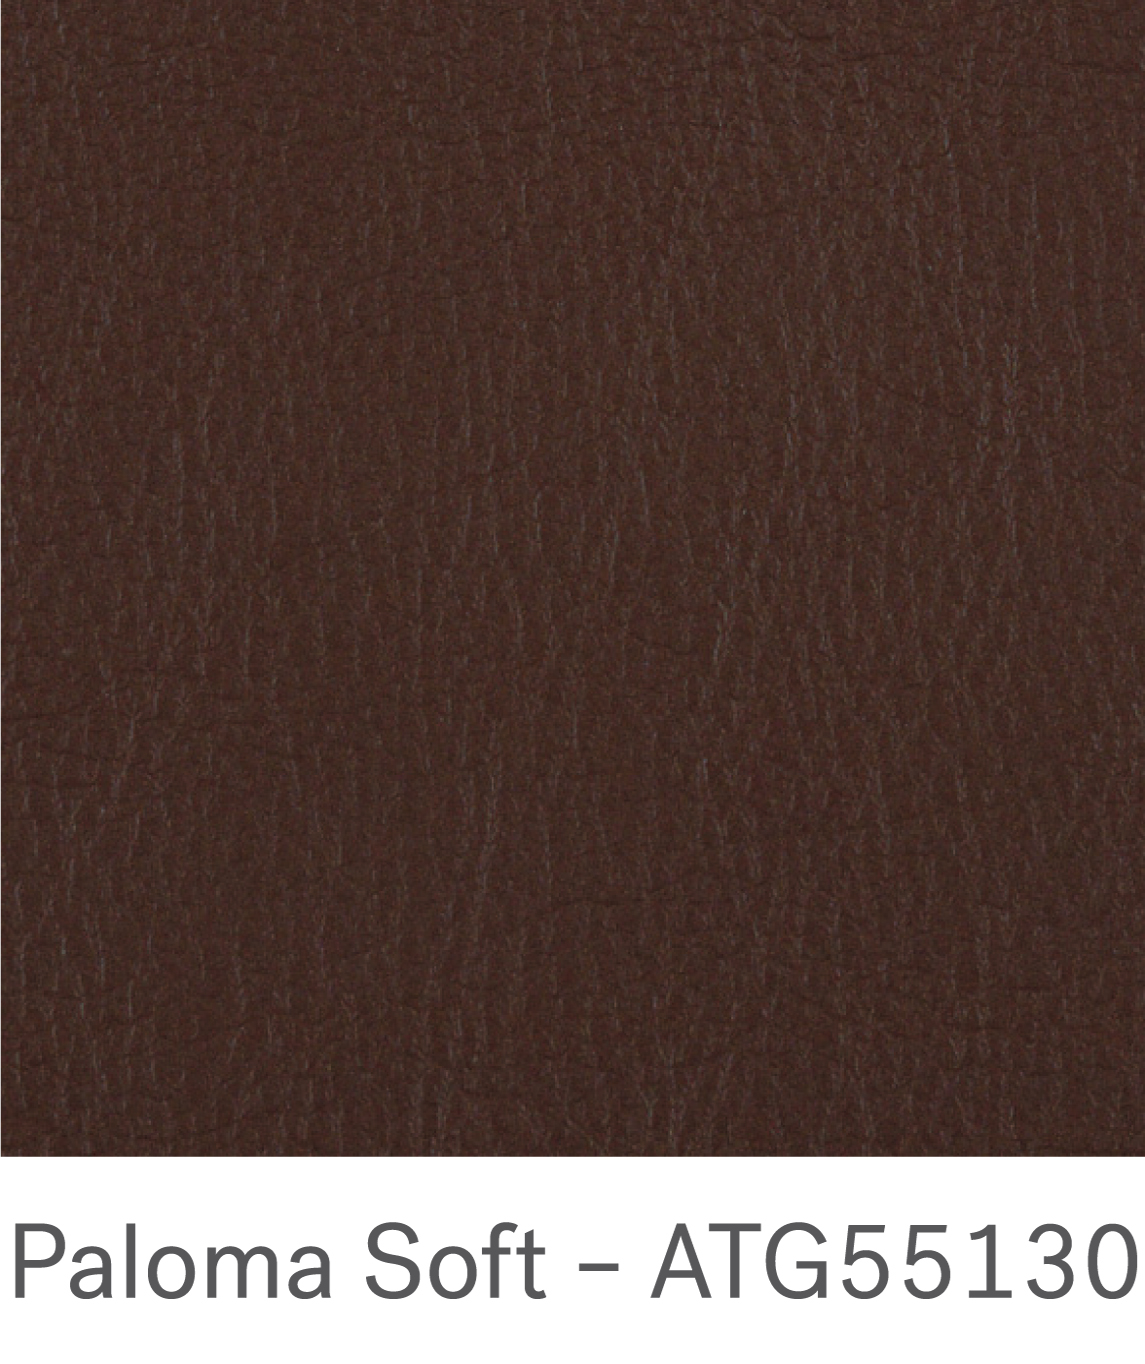 Paloma soft – ATG55130